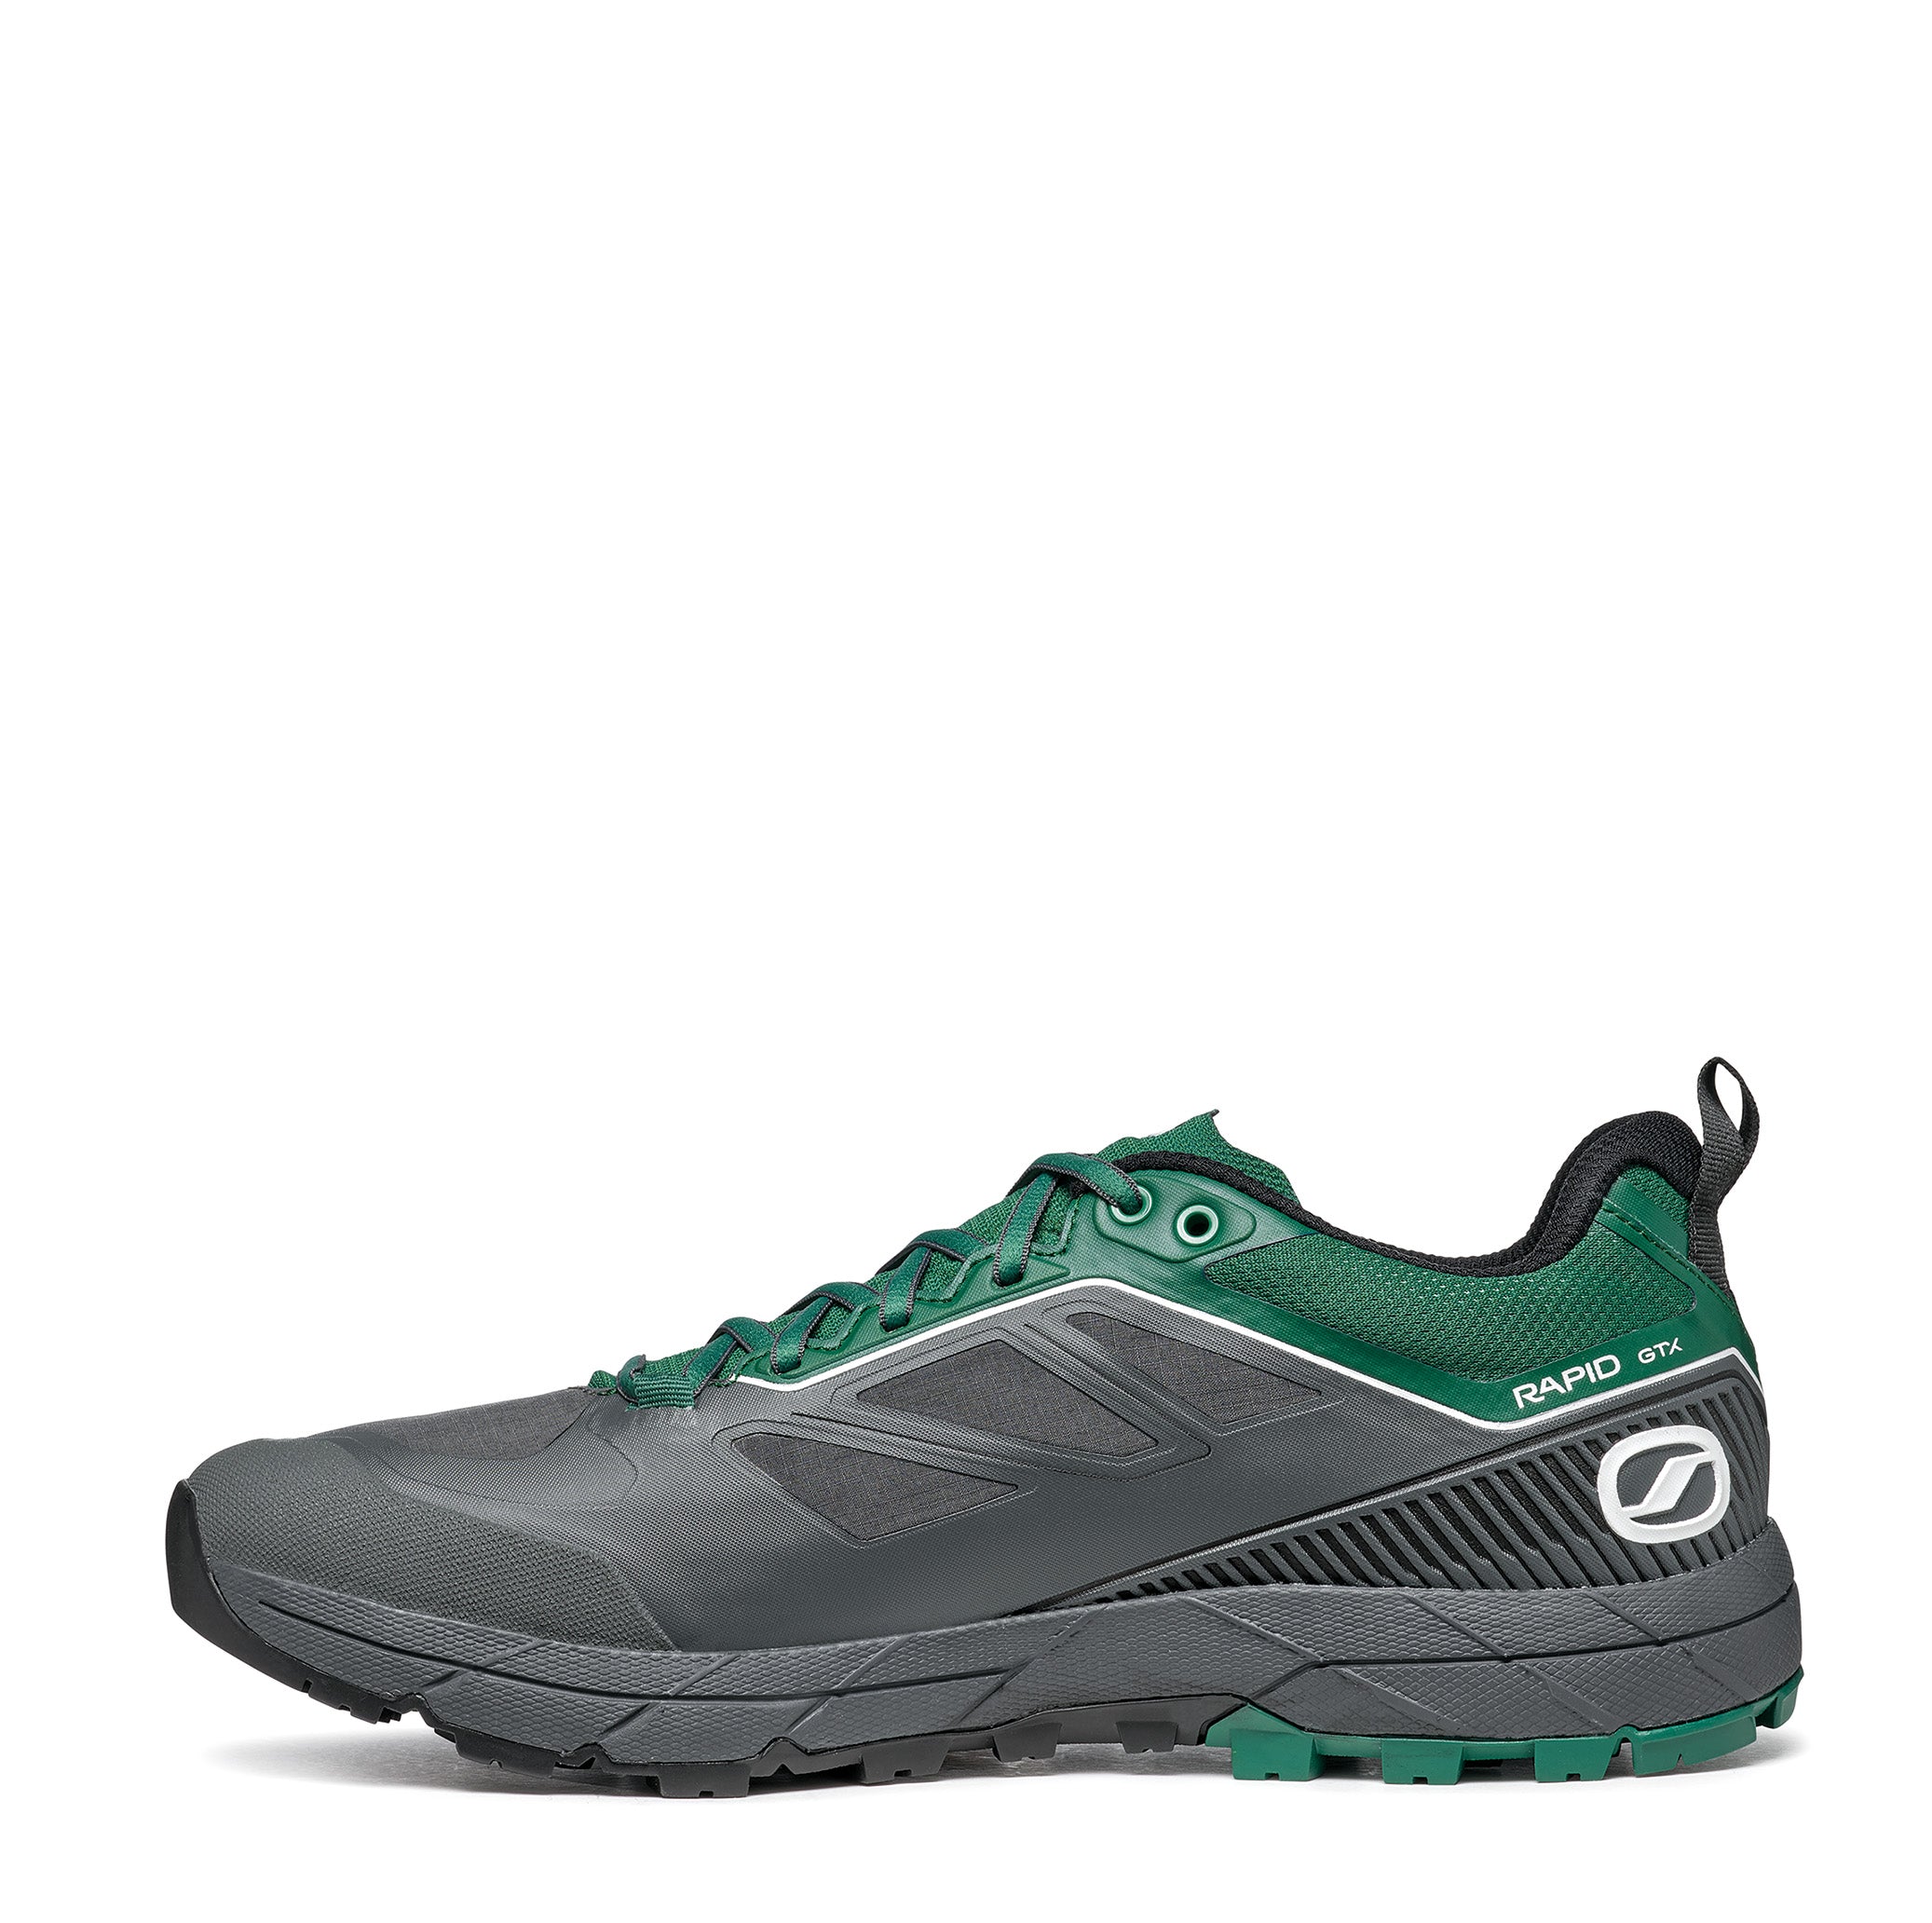 Scarpa RAPID GTX Anthracite Alpine Green trail running shoe